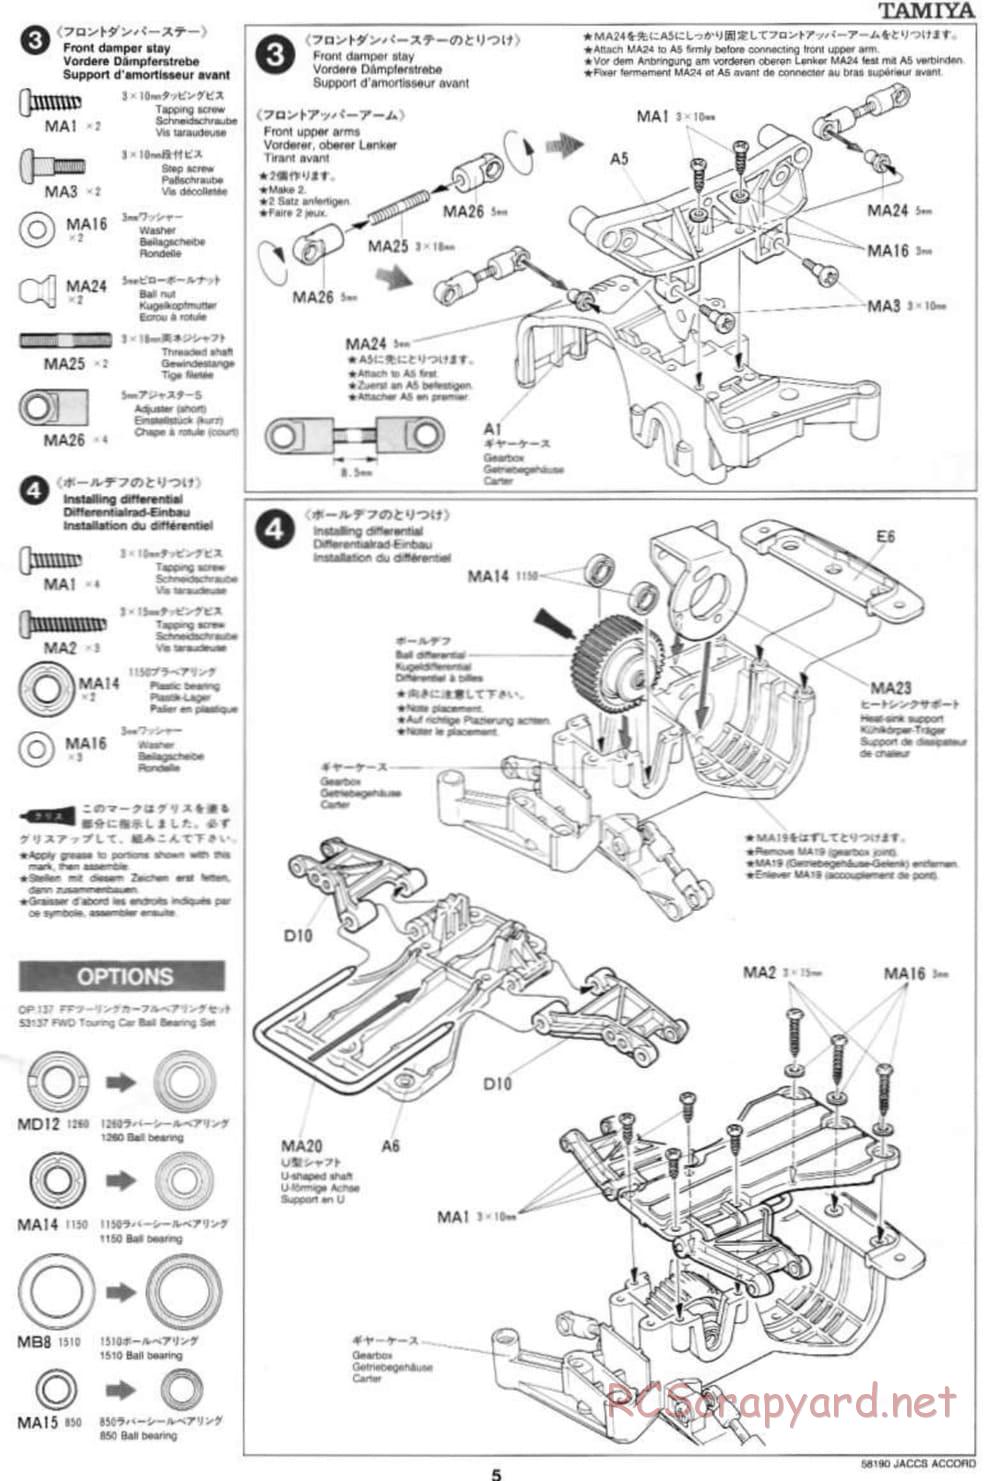 Tamiya - JACCS Honda Accord - FF-01 Chassis - Manual - Page 5